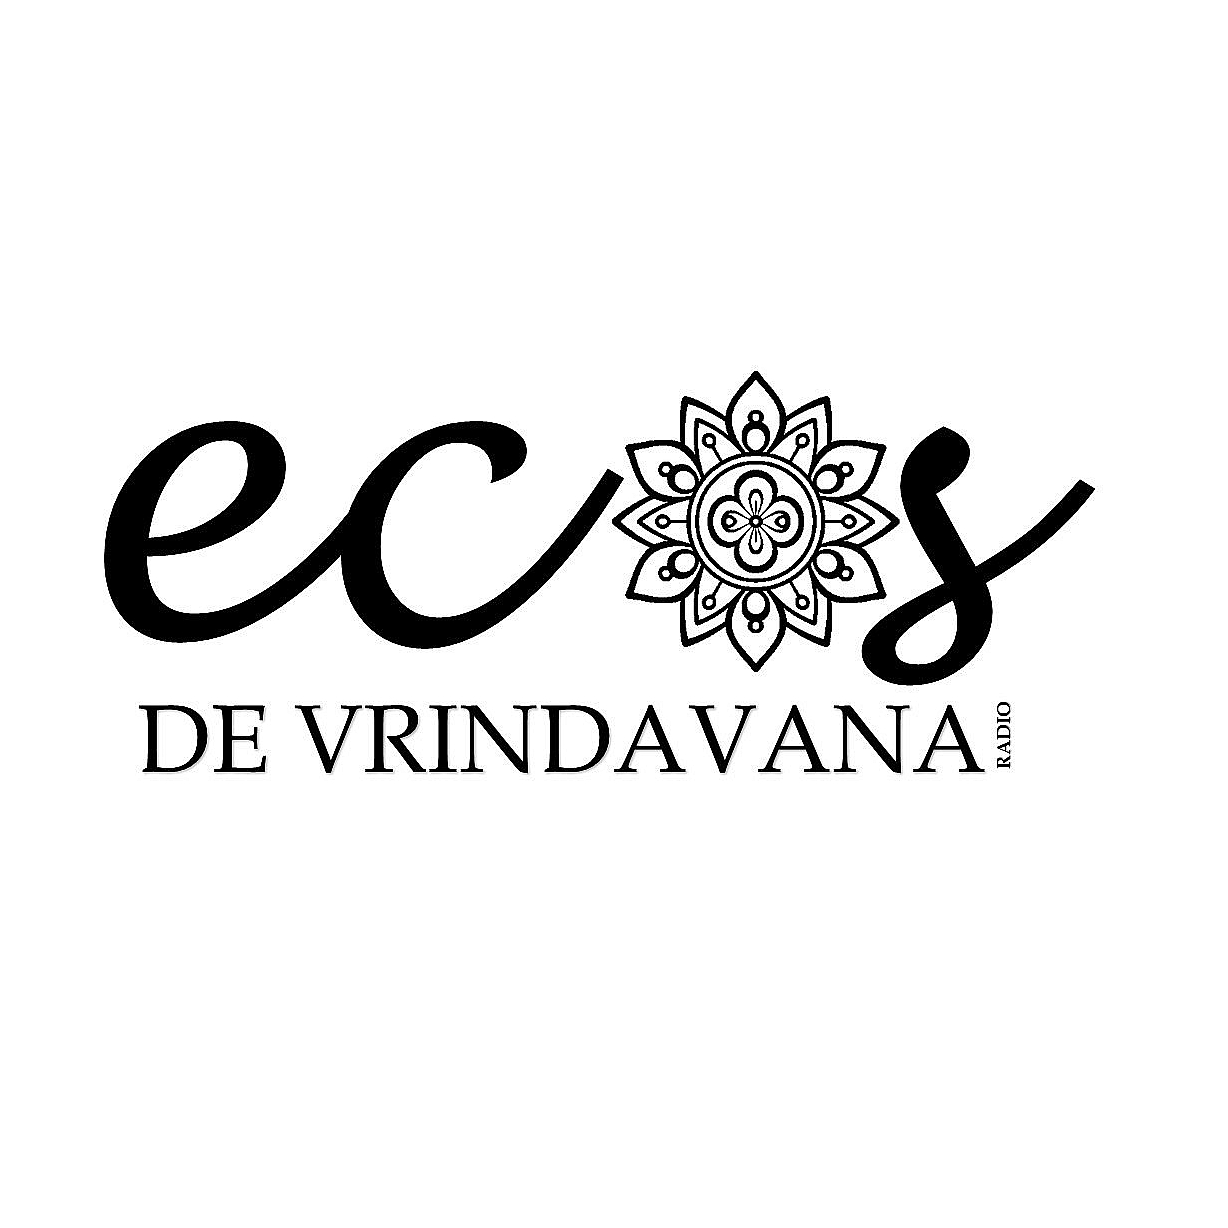 Ecos of Vrindavan